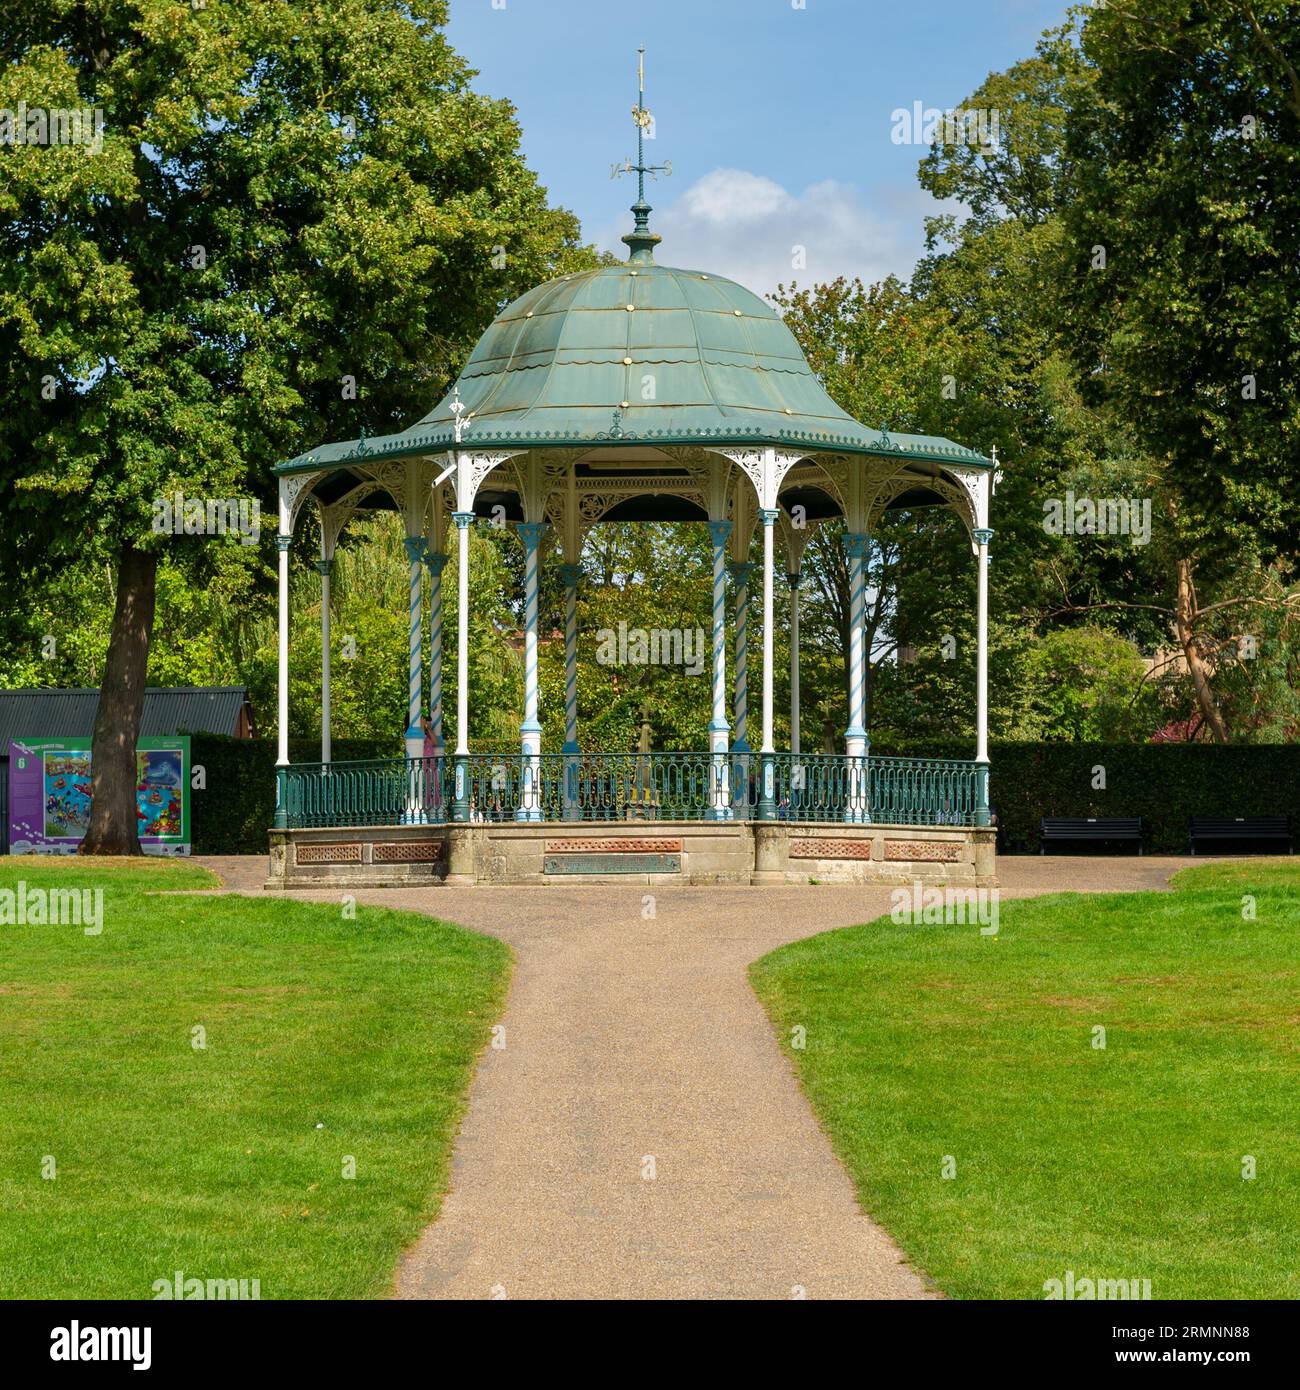 The Shrewsbury bandstand at The Quarry, Shrewsbury, Shropshire, England Stock Photo